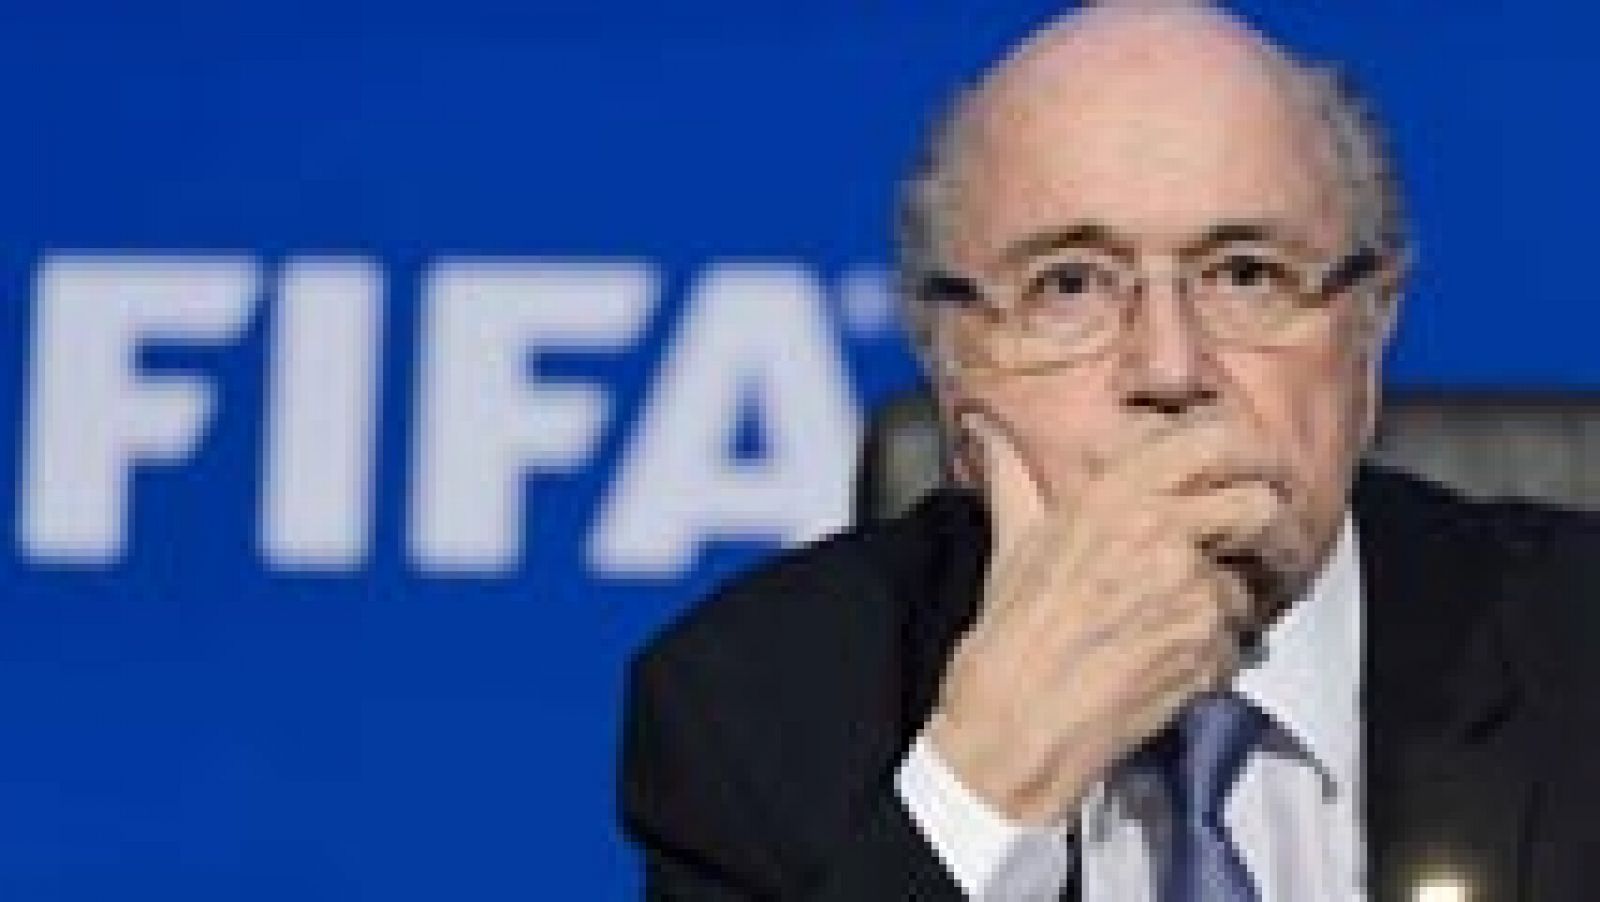 El Tribunal de Arbitraje Deportivo (TAS) ha rechazado el recurso presentado por el suizo Joseph Blatter, expresidente de la FIFA al que ésta sancionó durante seis años por incumplir el Código Ético de la organización.